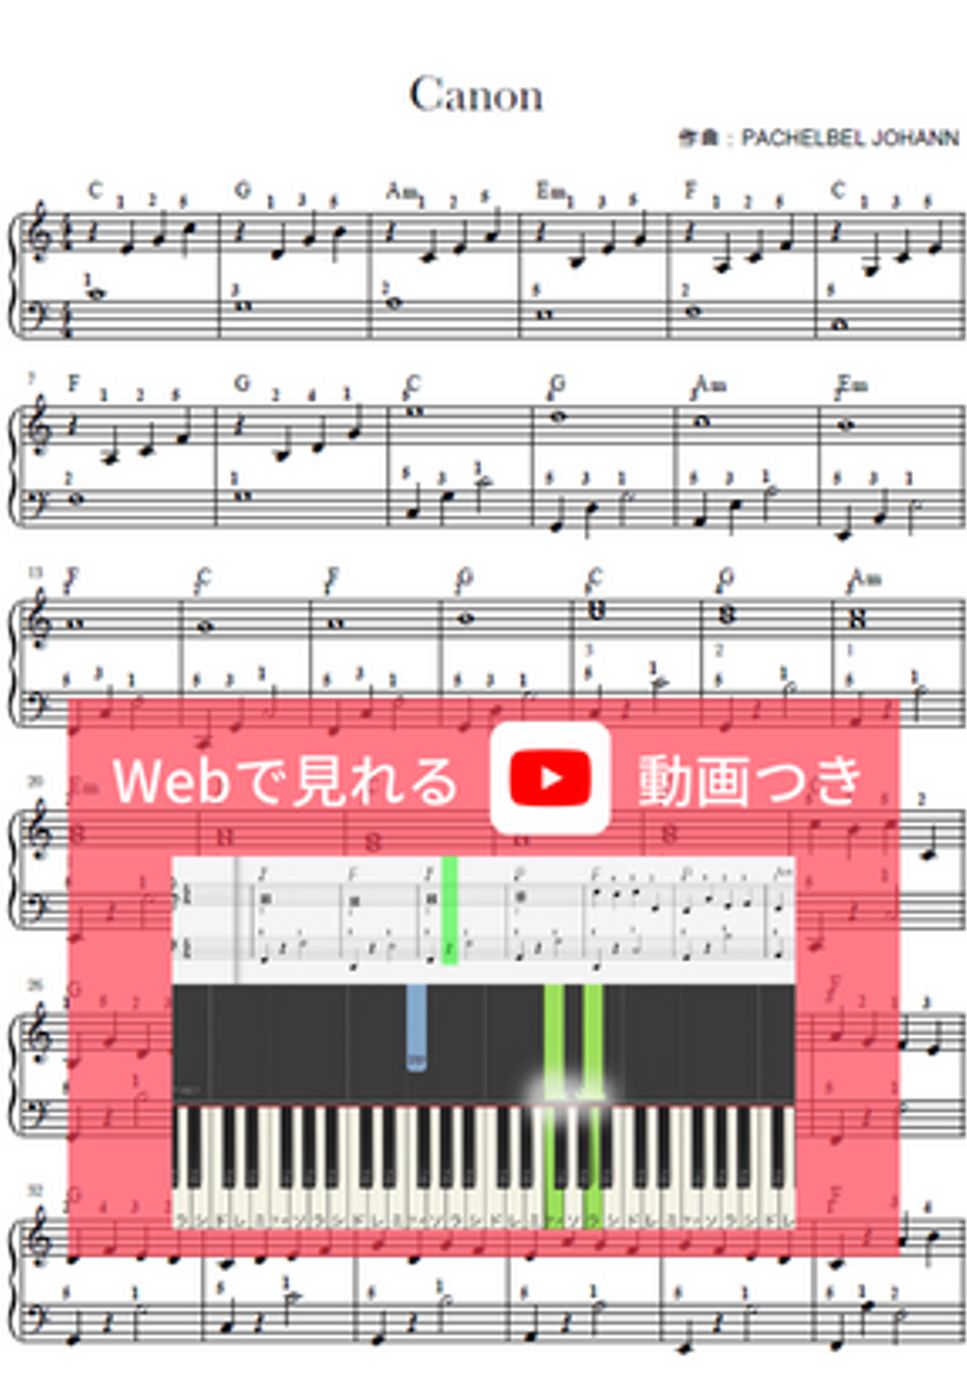 パッヘルベル - カノン (ピアノソロ/指番号つき/動画つき) by anytimepiano